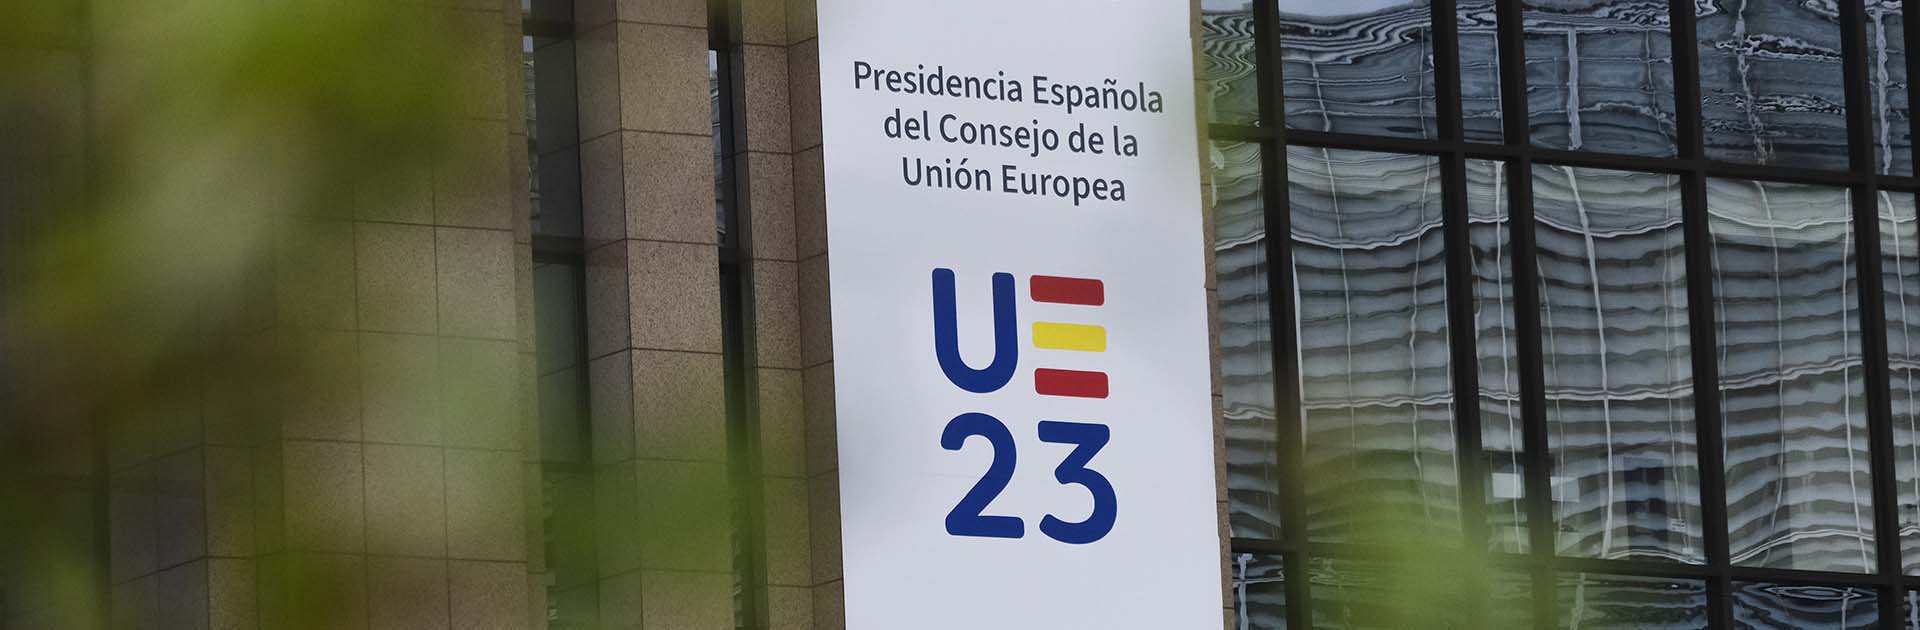 Banderas de la UE y banner con el logo de la Presidencia española del Consejo de la UE como decoración en el edificio Europa en Bruselas, Bélgica